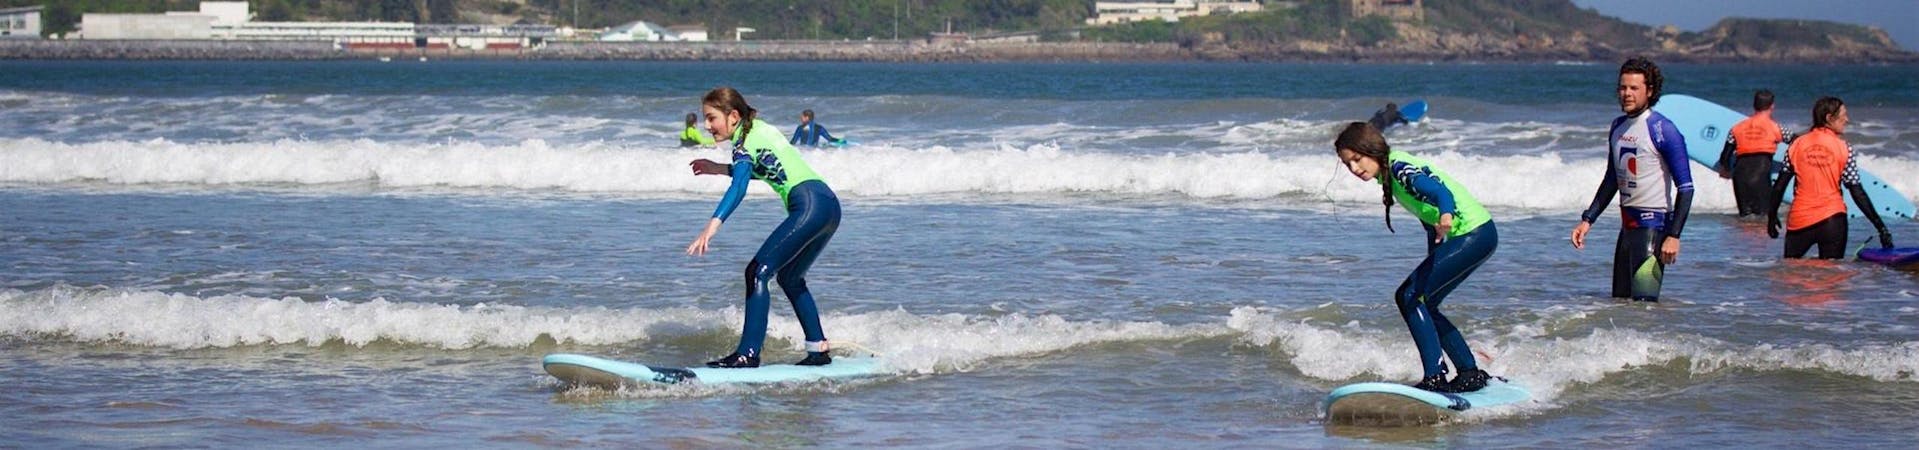 2 chicas jóvenes aprenden a surfear durante sus clases de surf de fin de semana (a partir de 7 años) en la playa de Hendaya con Gold Coast Surf School Hendaya.